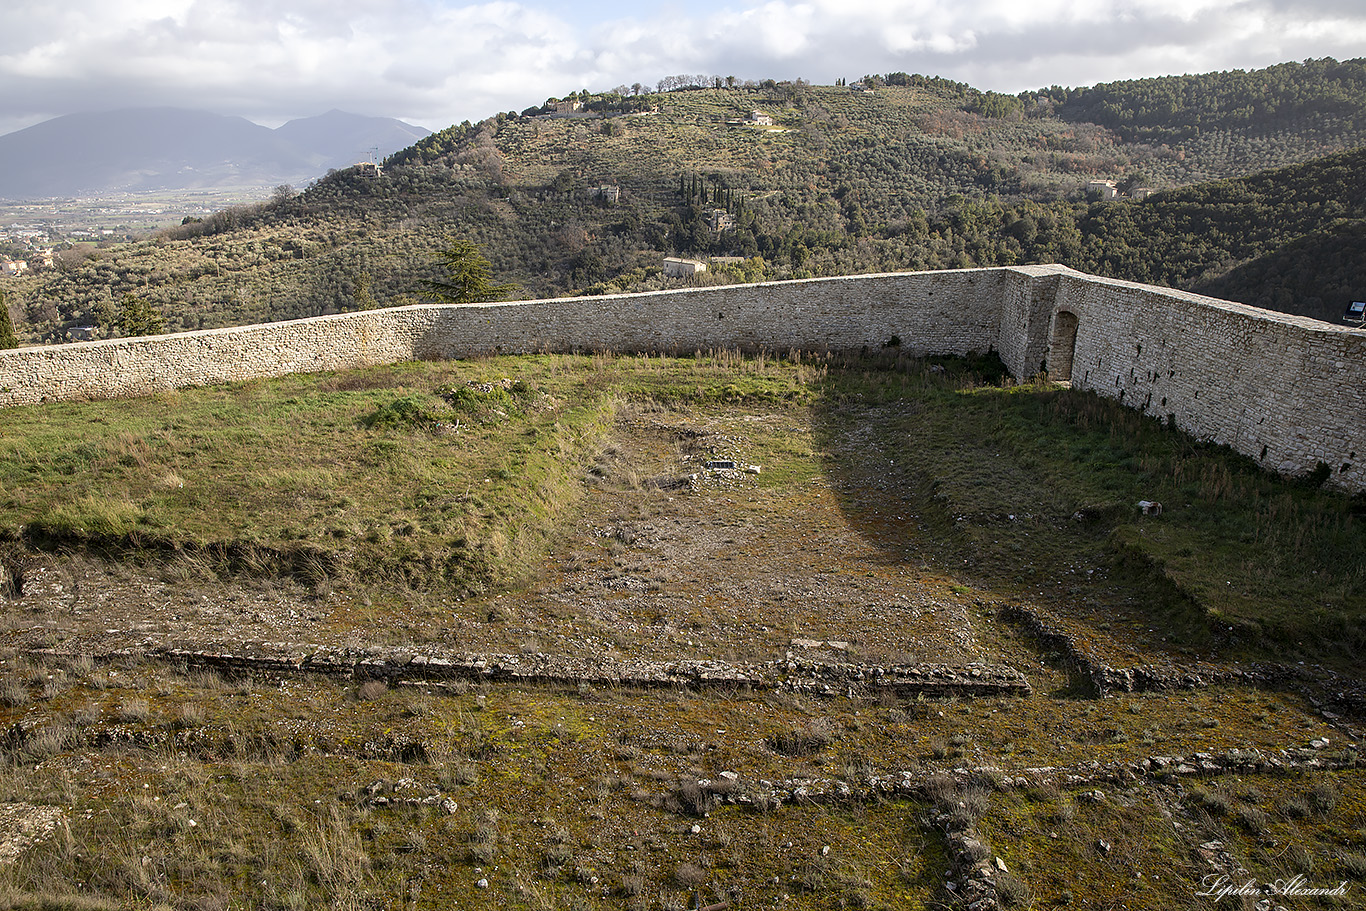 Замок Альборноциана (Rocca Albornoziana)